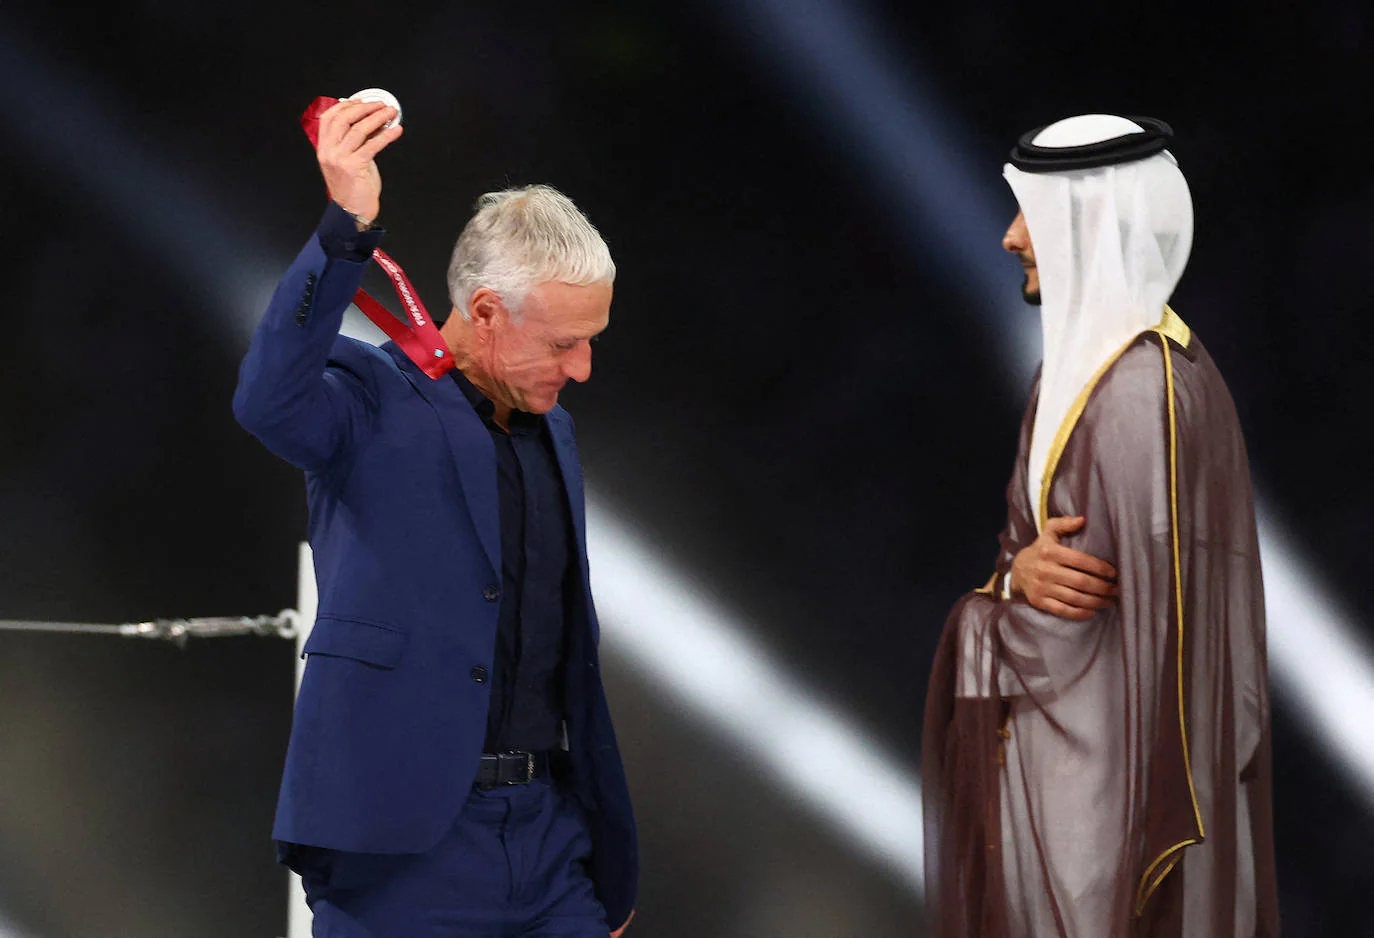 Fotos: Las mejores imágenes de la final del Mundial de Qatar entre Argentina y Francia